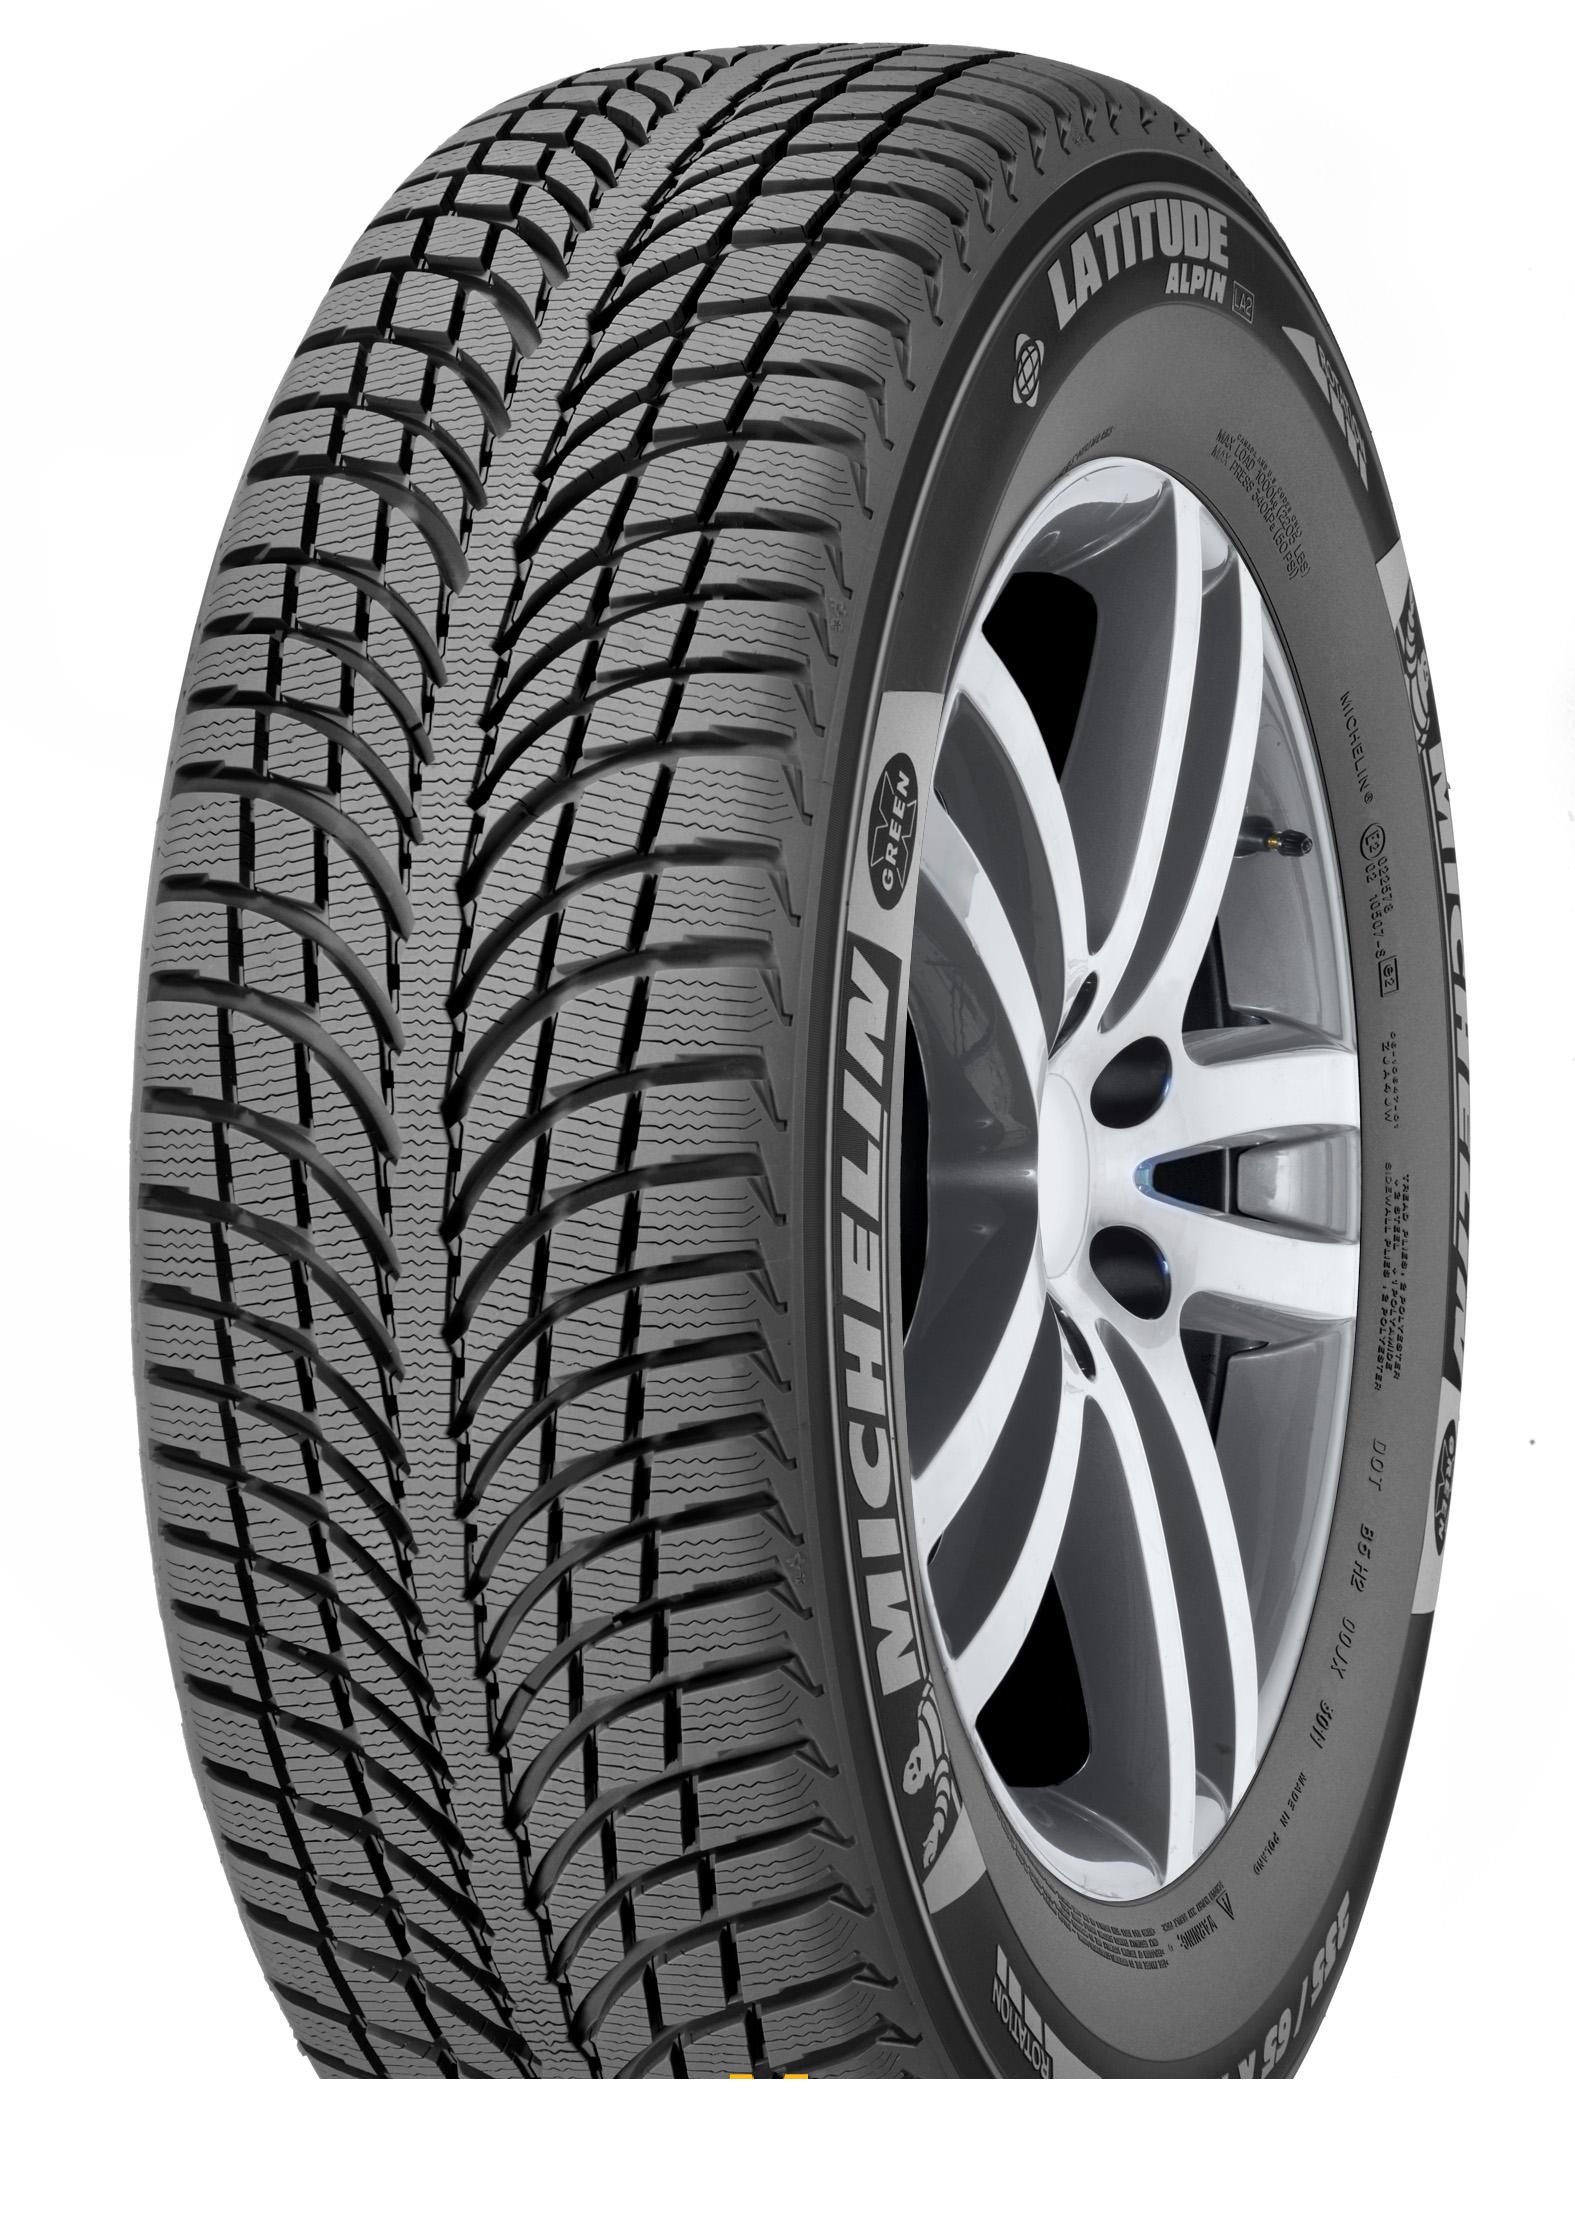 Tire Michelin Latitude Alpin 2 235/55R18 104H - picture, photo, image